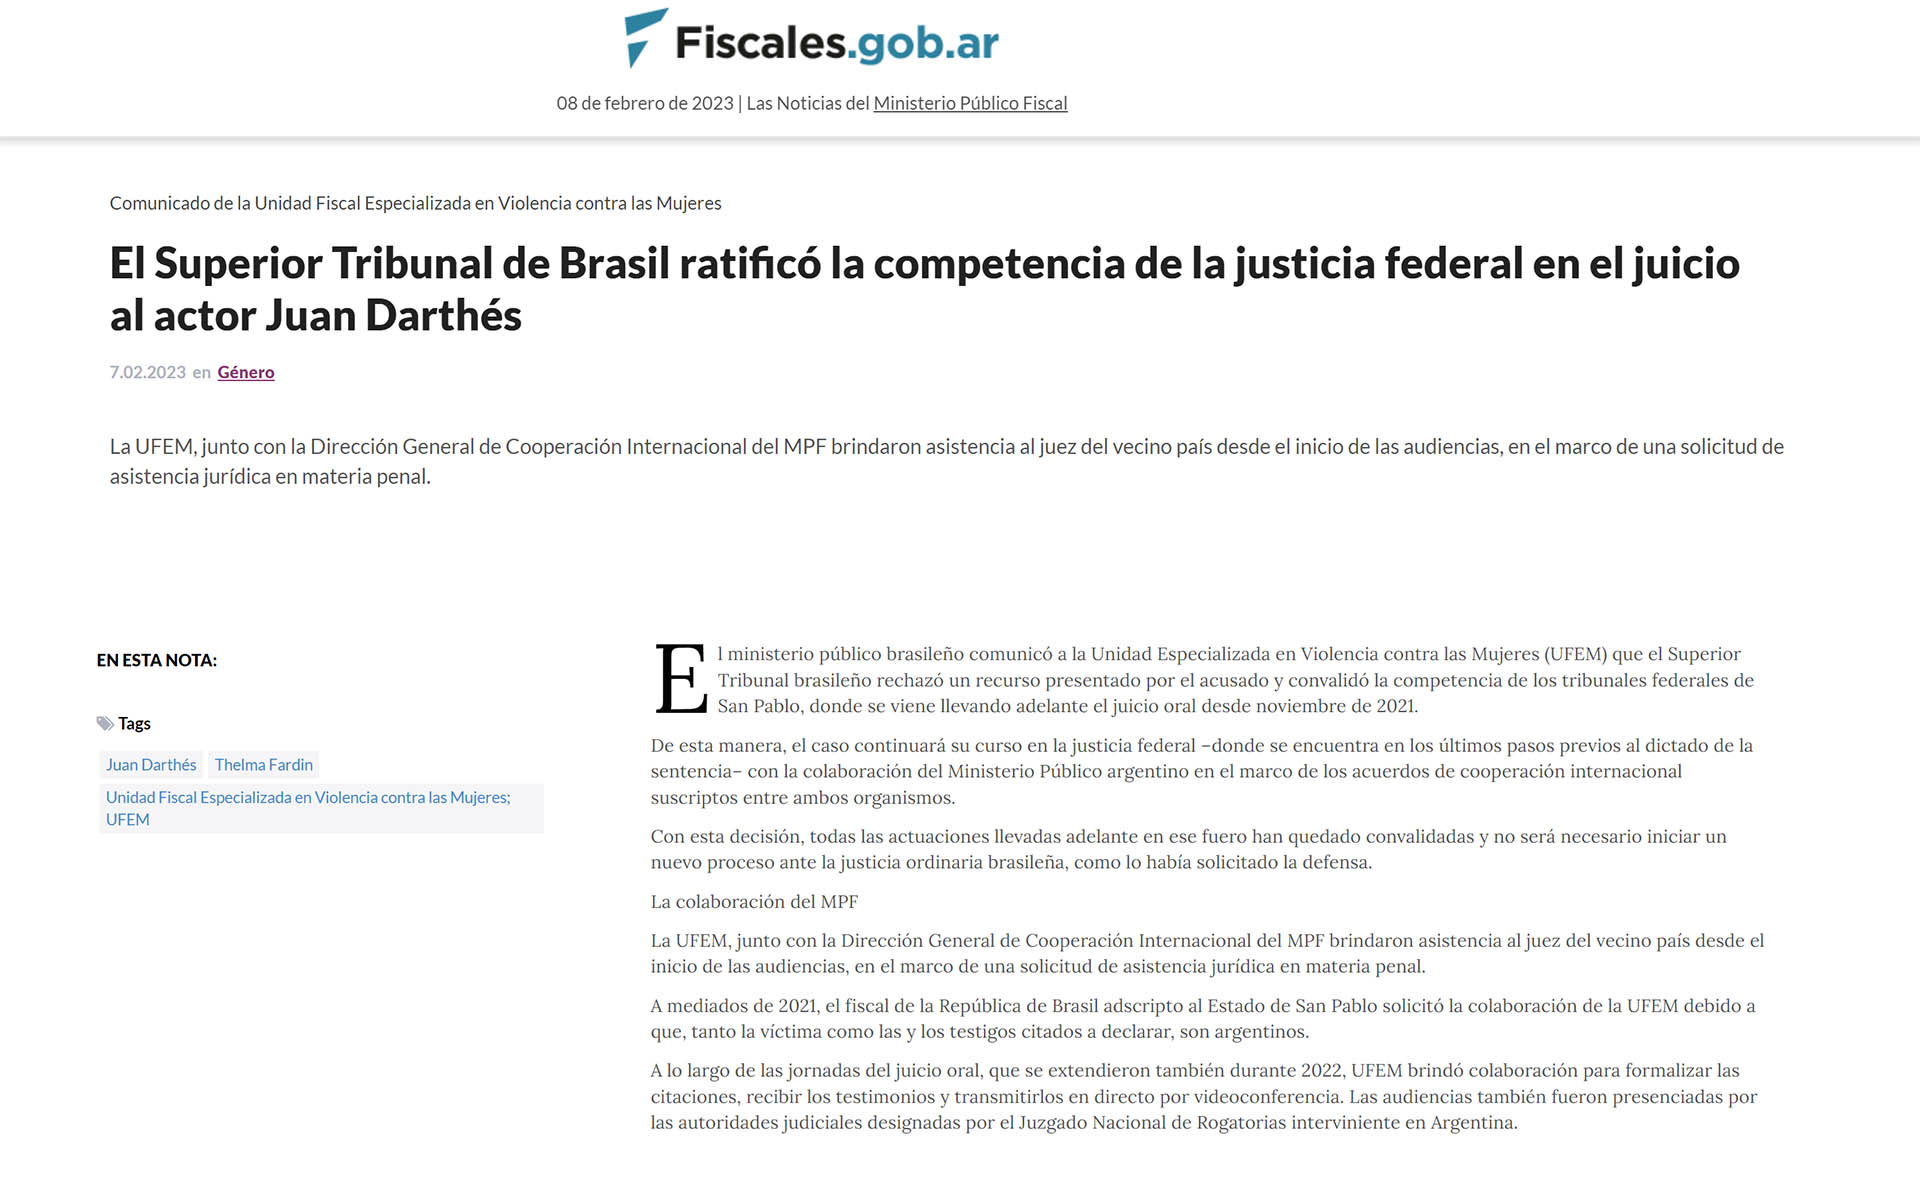 El portal "Fiscales" comunicó la noticia del Superior Tribunal de Justicia de Brasil de avanzar en la causa por estupro agravado en el fuero federal